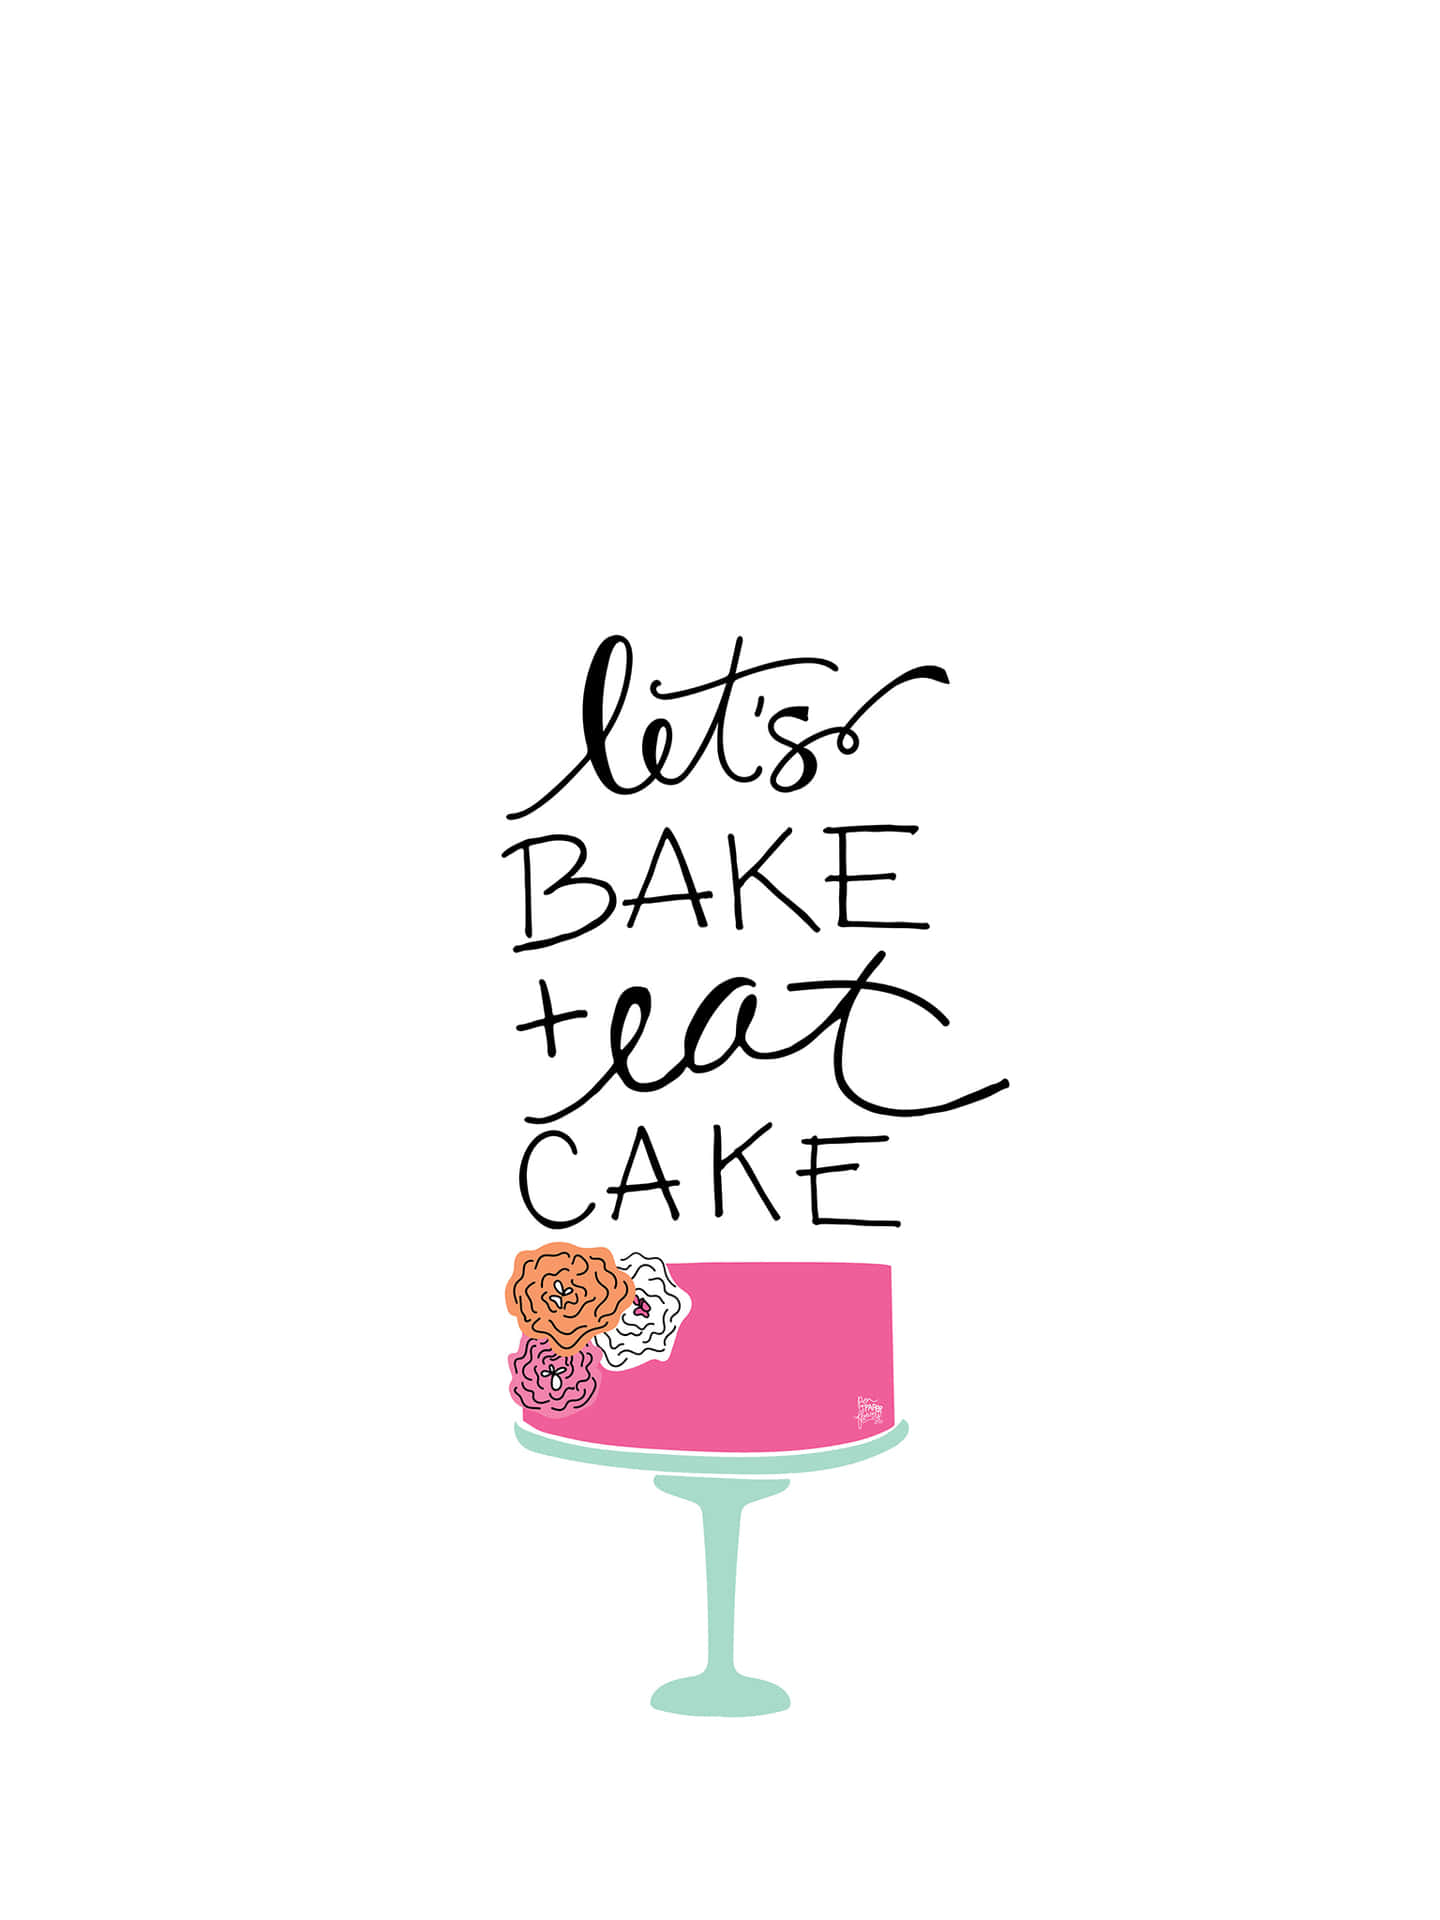 Let's Bake Cake Wallpaper